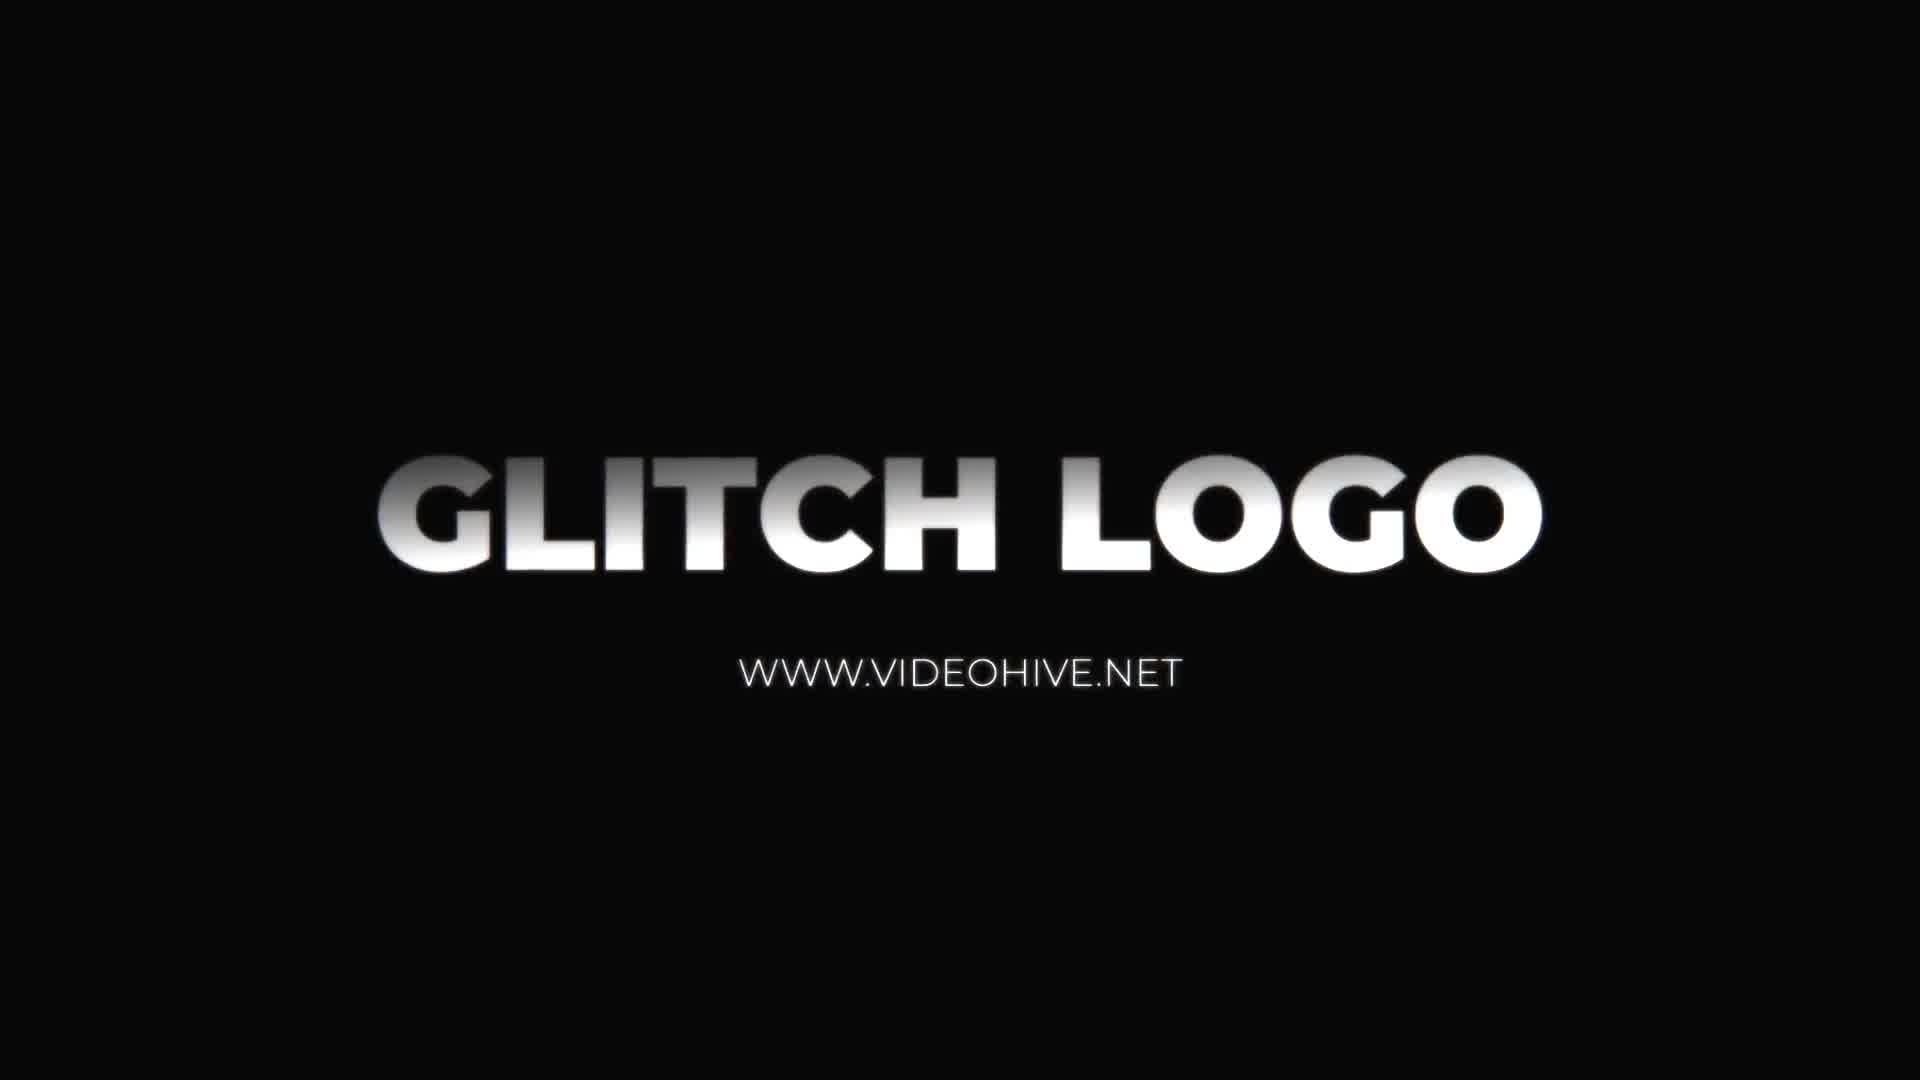 Glitch Logo Mogrt Videohive 22871341 Premiere Pro Image 10